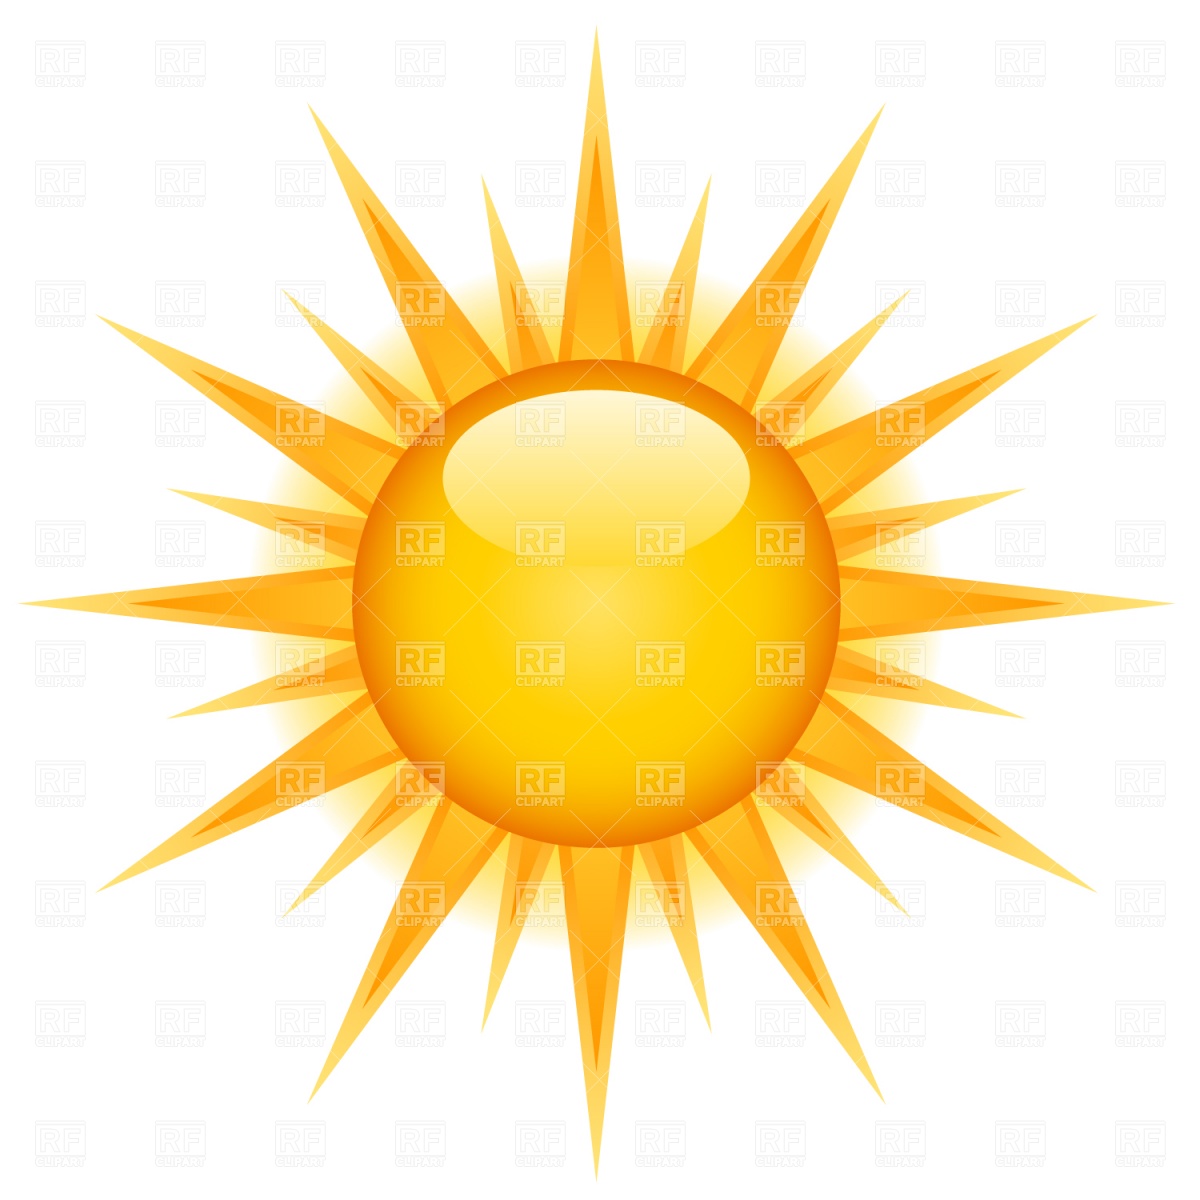 Sun symbol clipart - Clipground